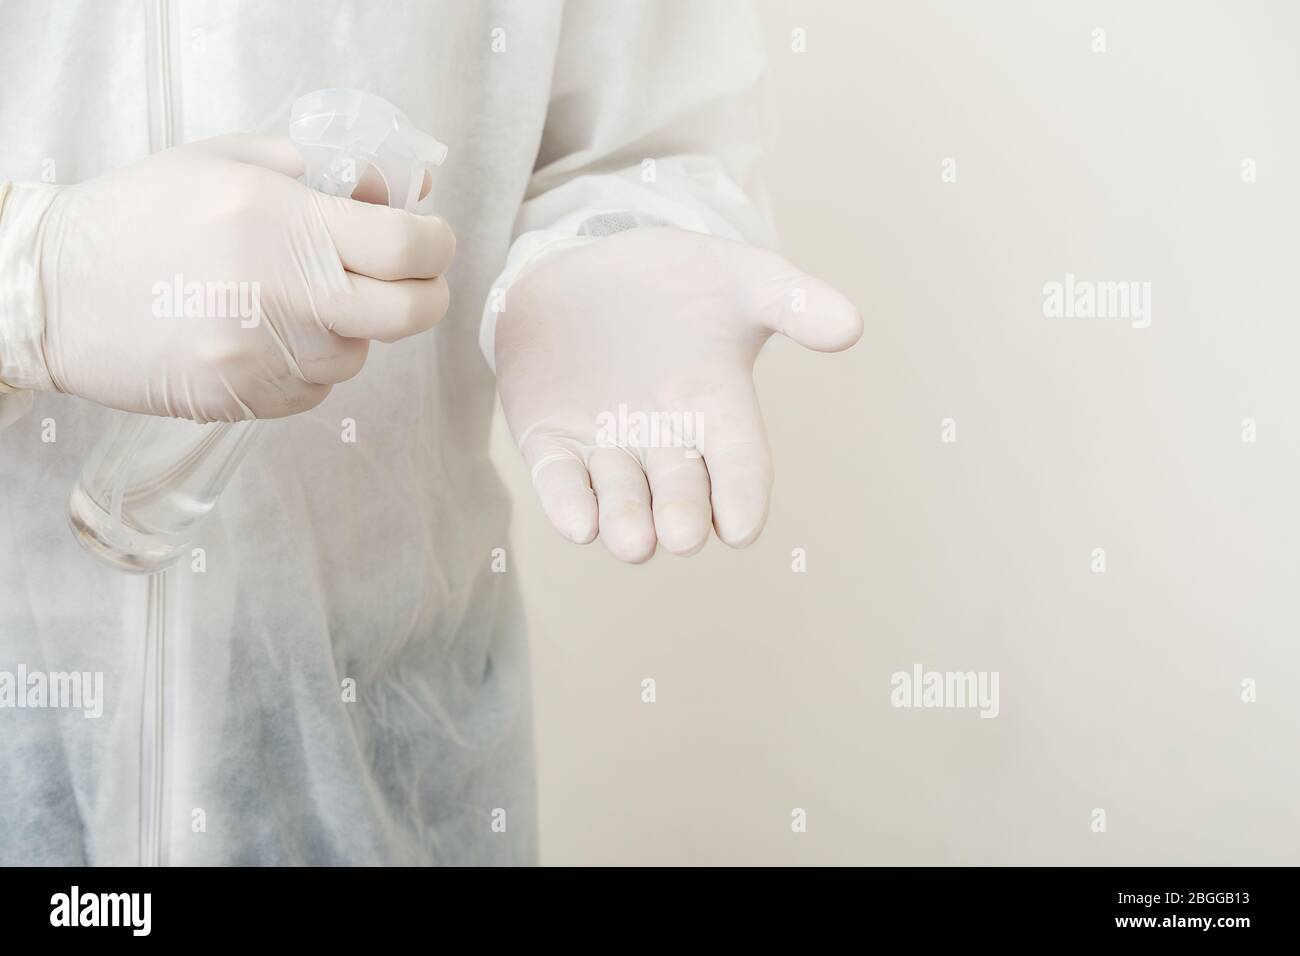 Aerosol de alcohol, aerosol anti-bacterias, líquido antiséptico para limpiar las manos en el espacio de copiado de las manos masculinas. Protección contra el coronavirus Covid-19, higiene de las manos. Piel Foto de stock